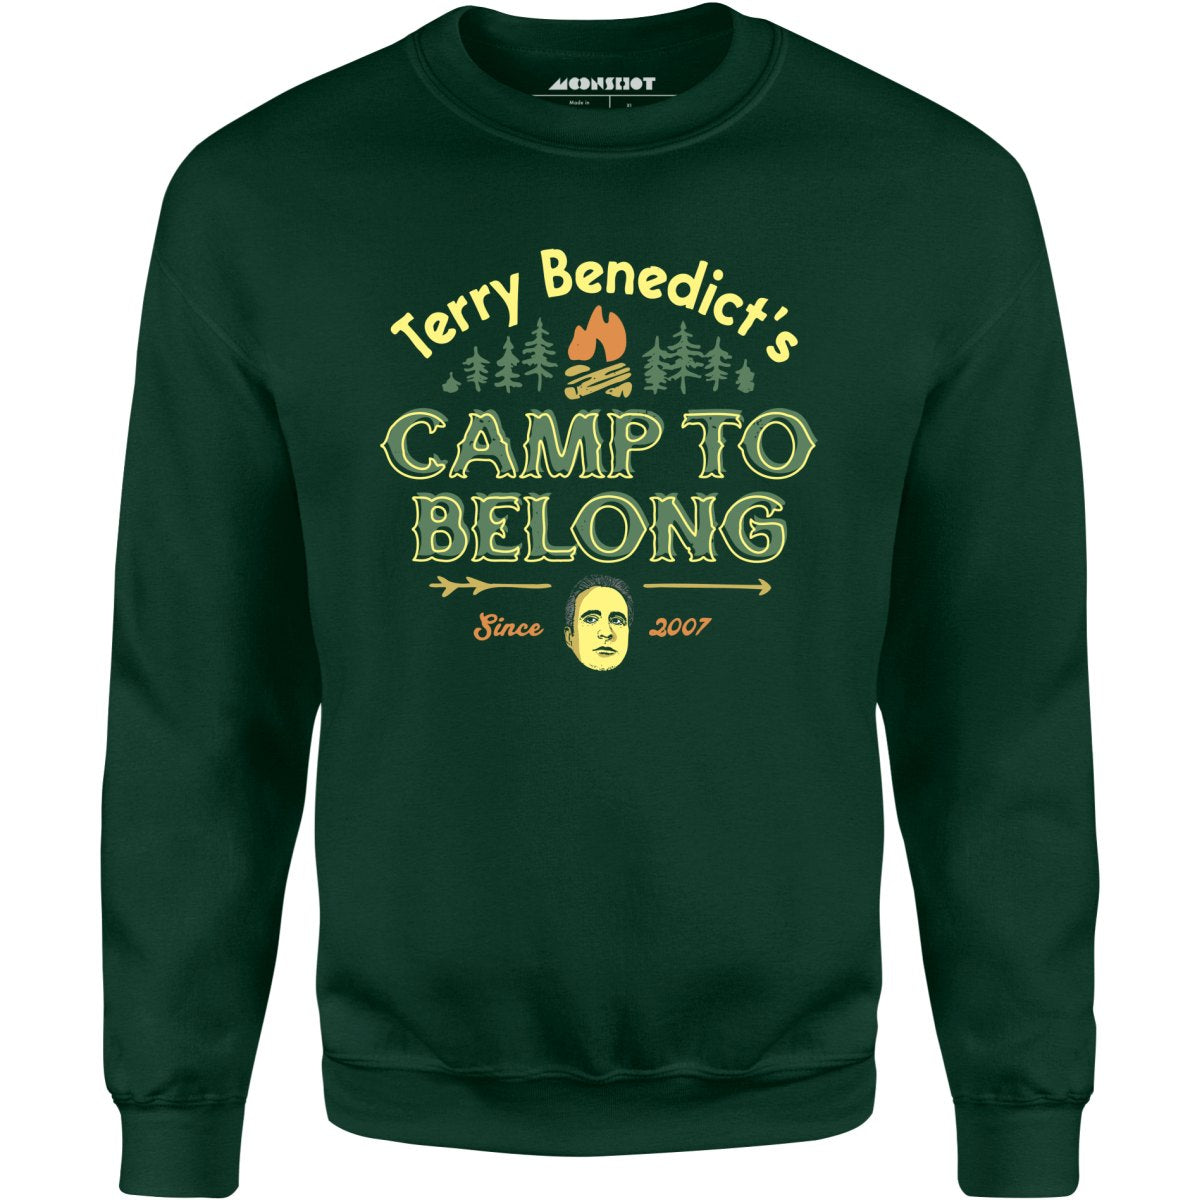 Terry Benedict's Camp to Belong - Unisex Sweatshirt